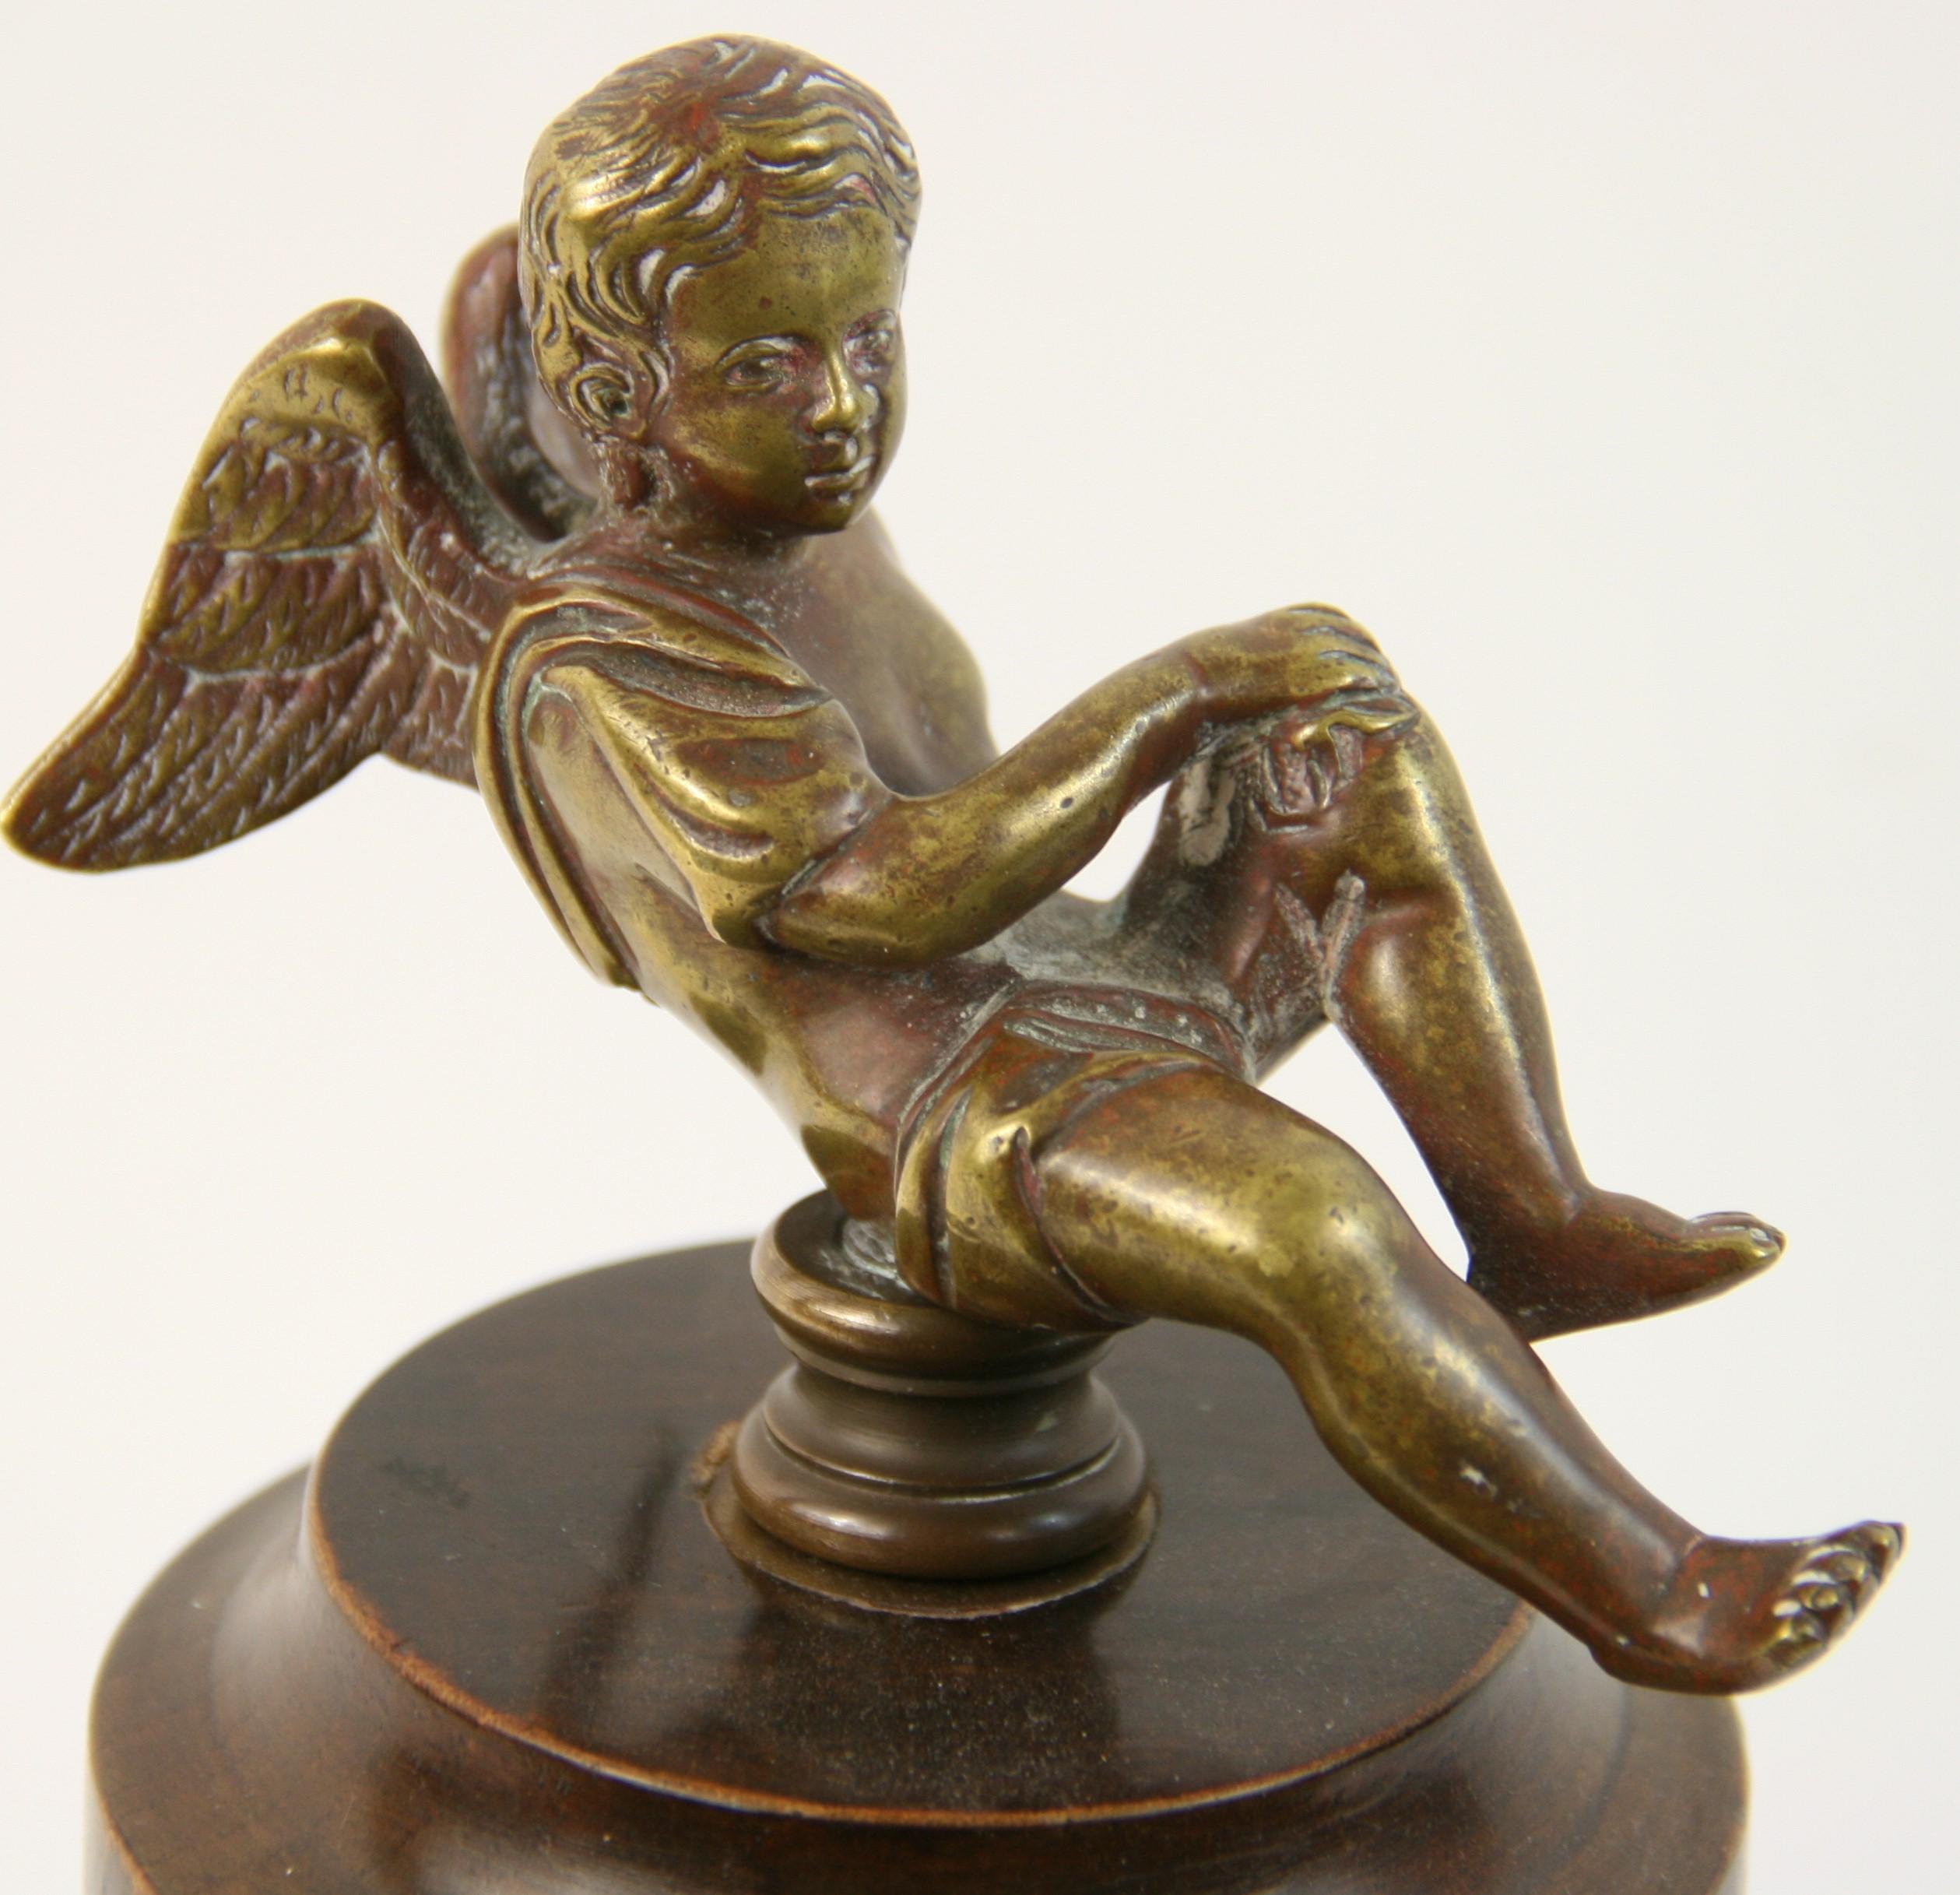 8-164 bronze cherub sculpture set atop a mahogany wood base.